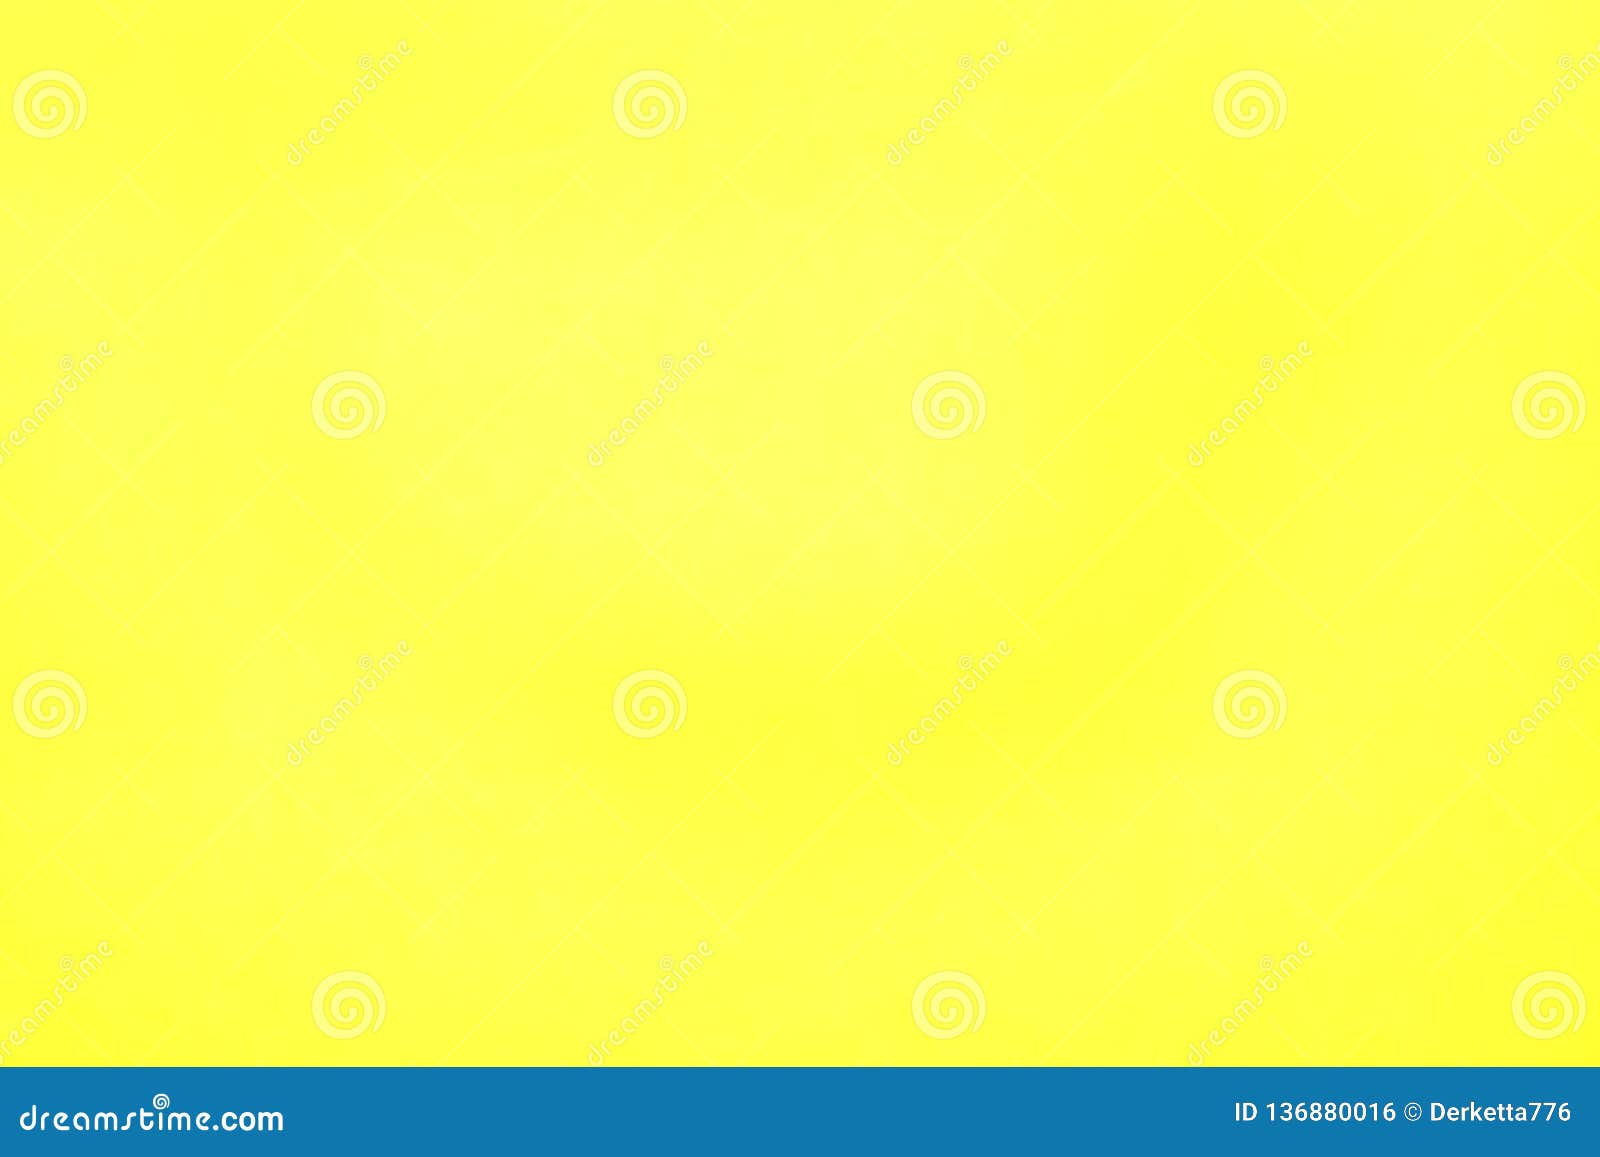 Plain Yellow Wallpaper